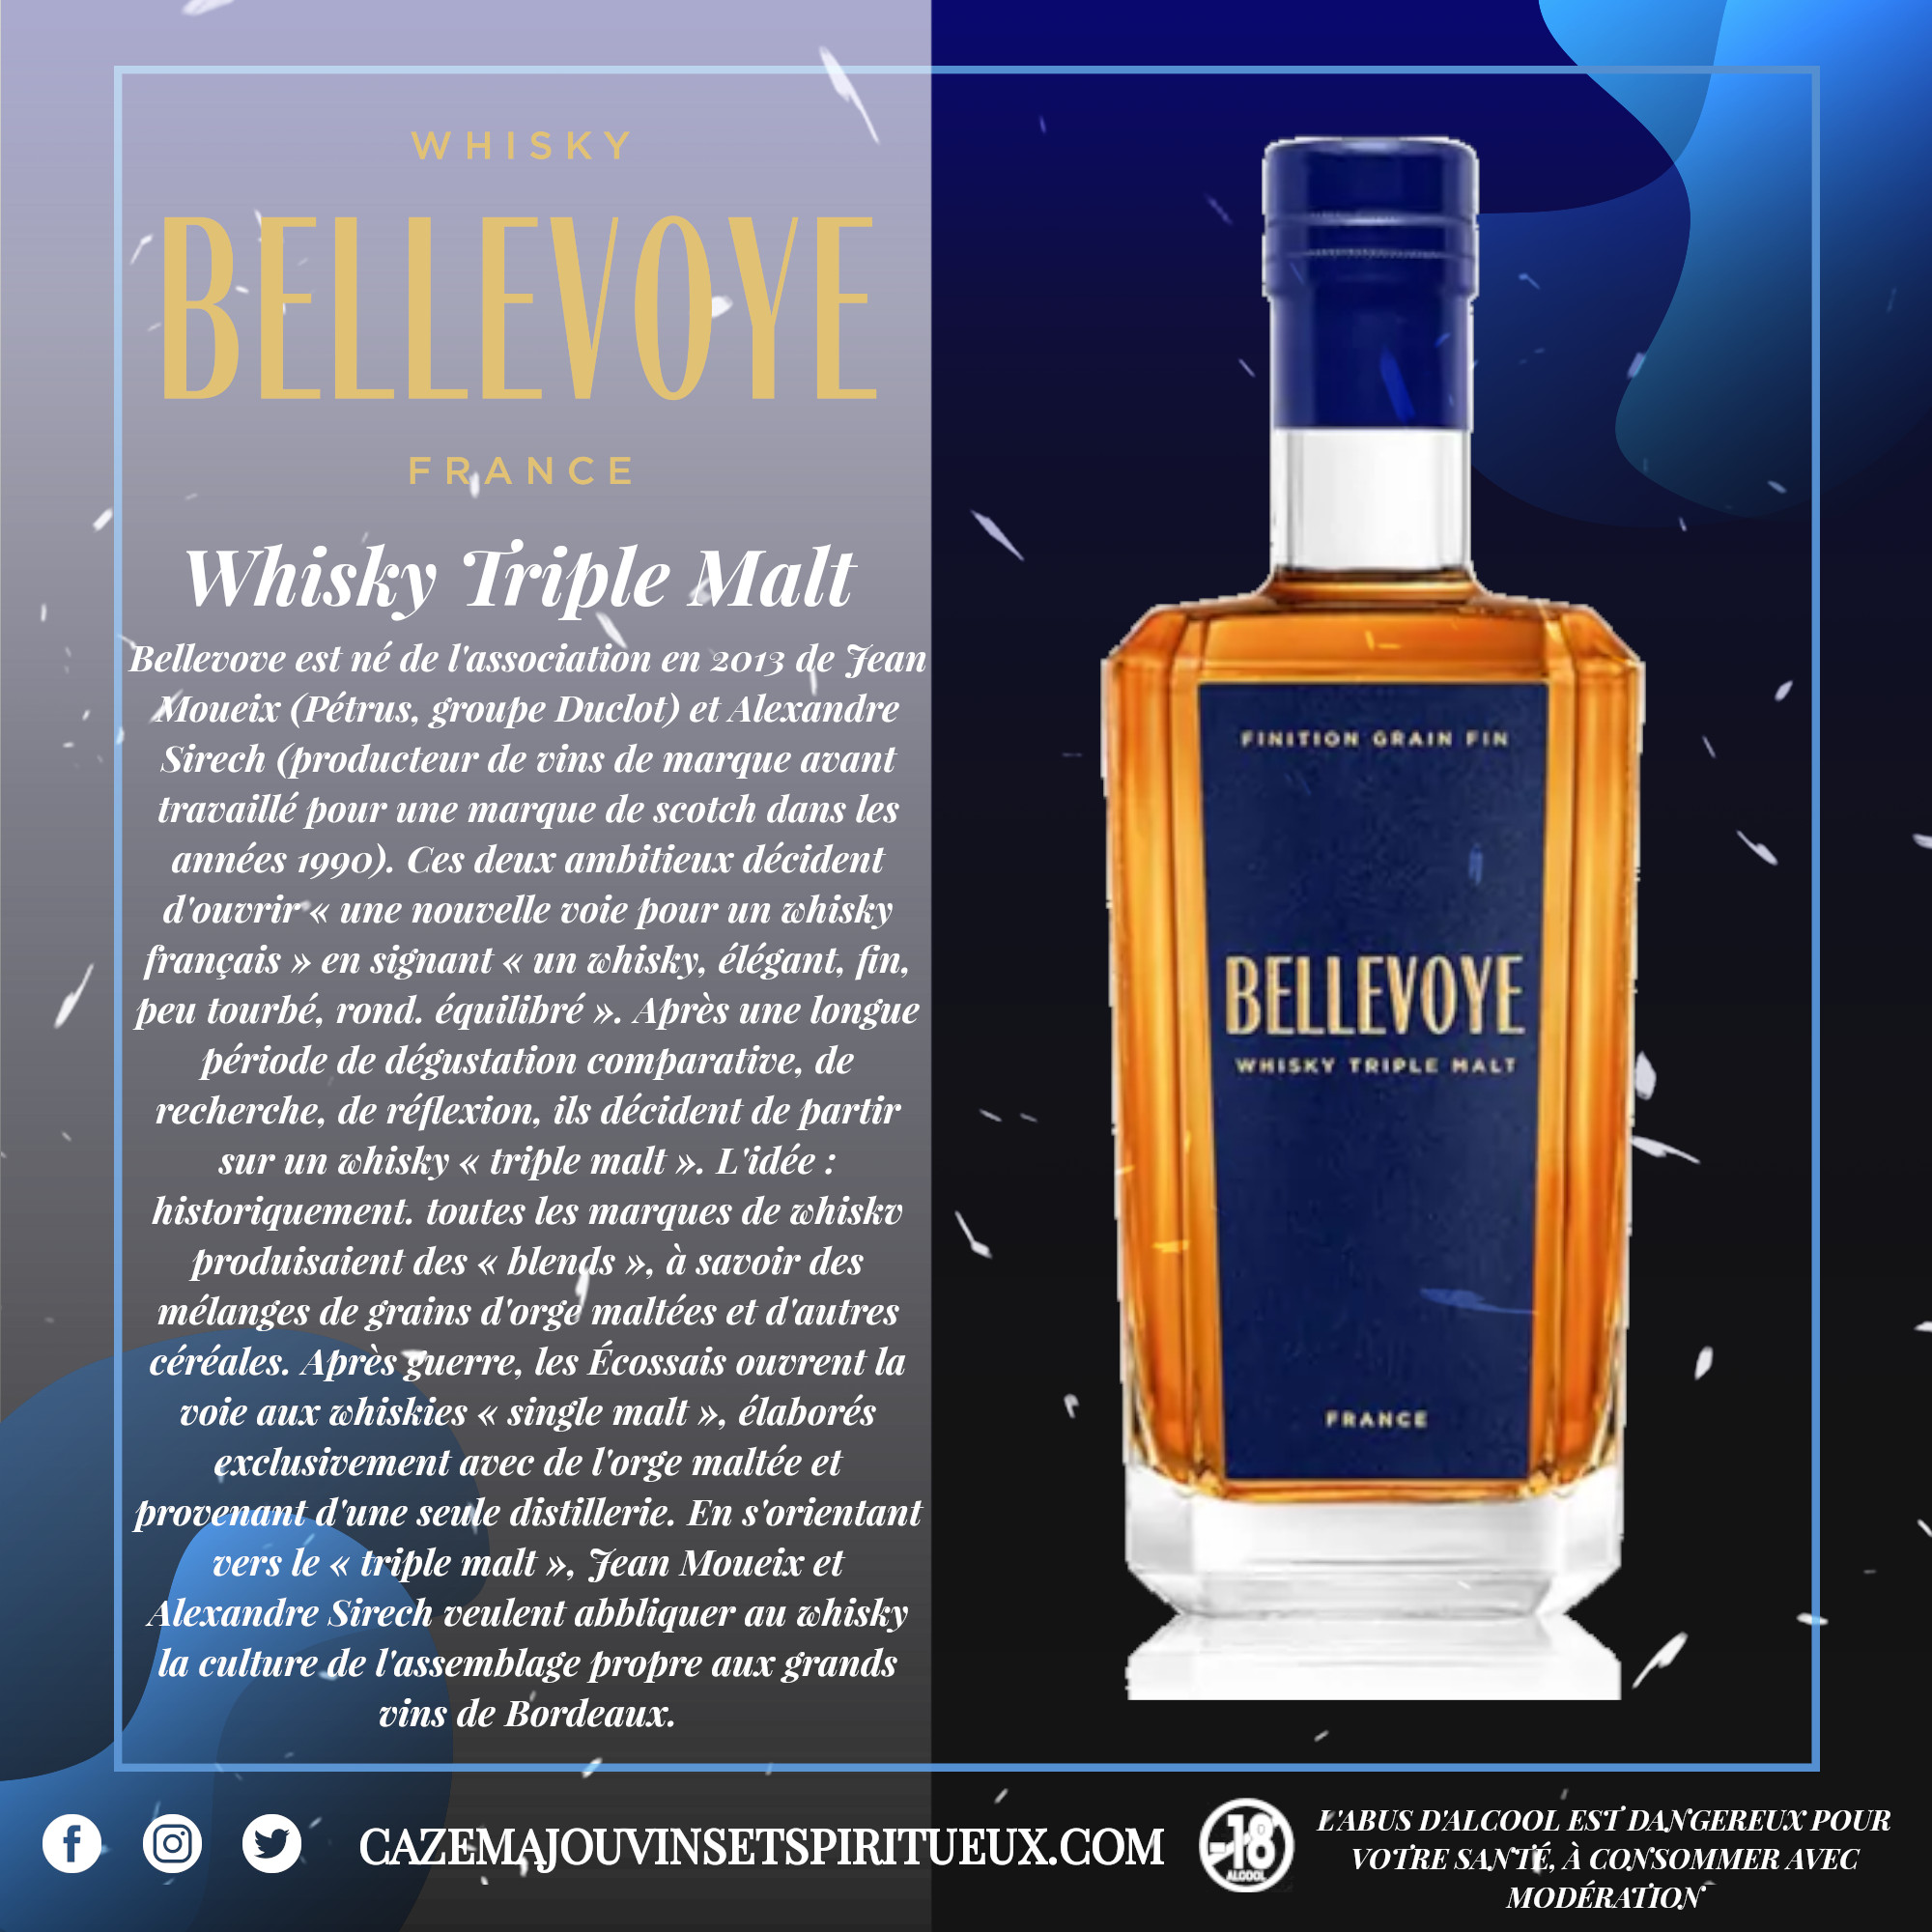 Whisky Bellevoye De France Bleu 70 cl 40°